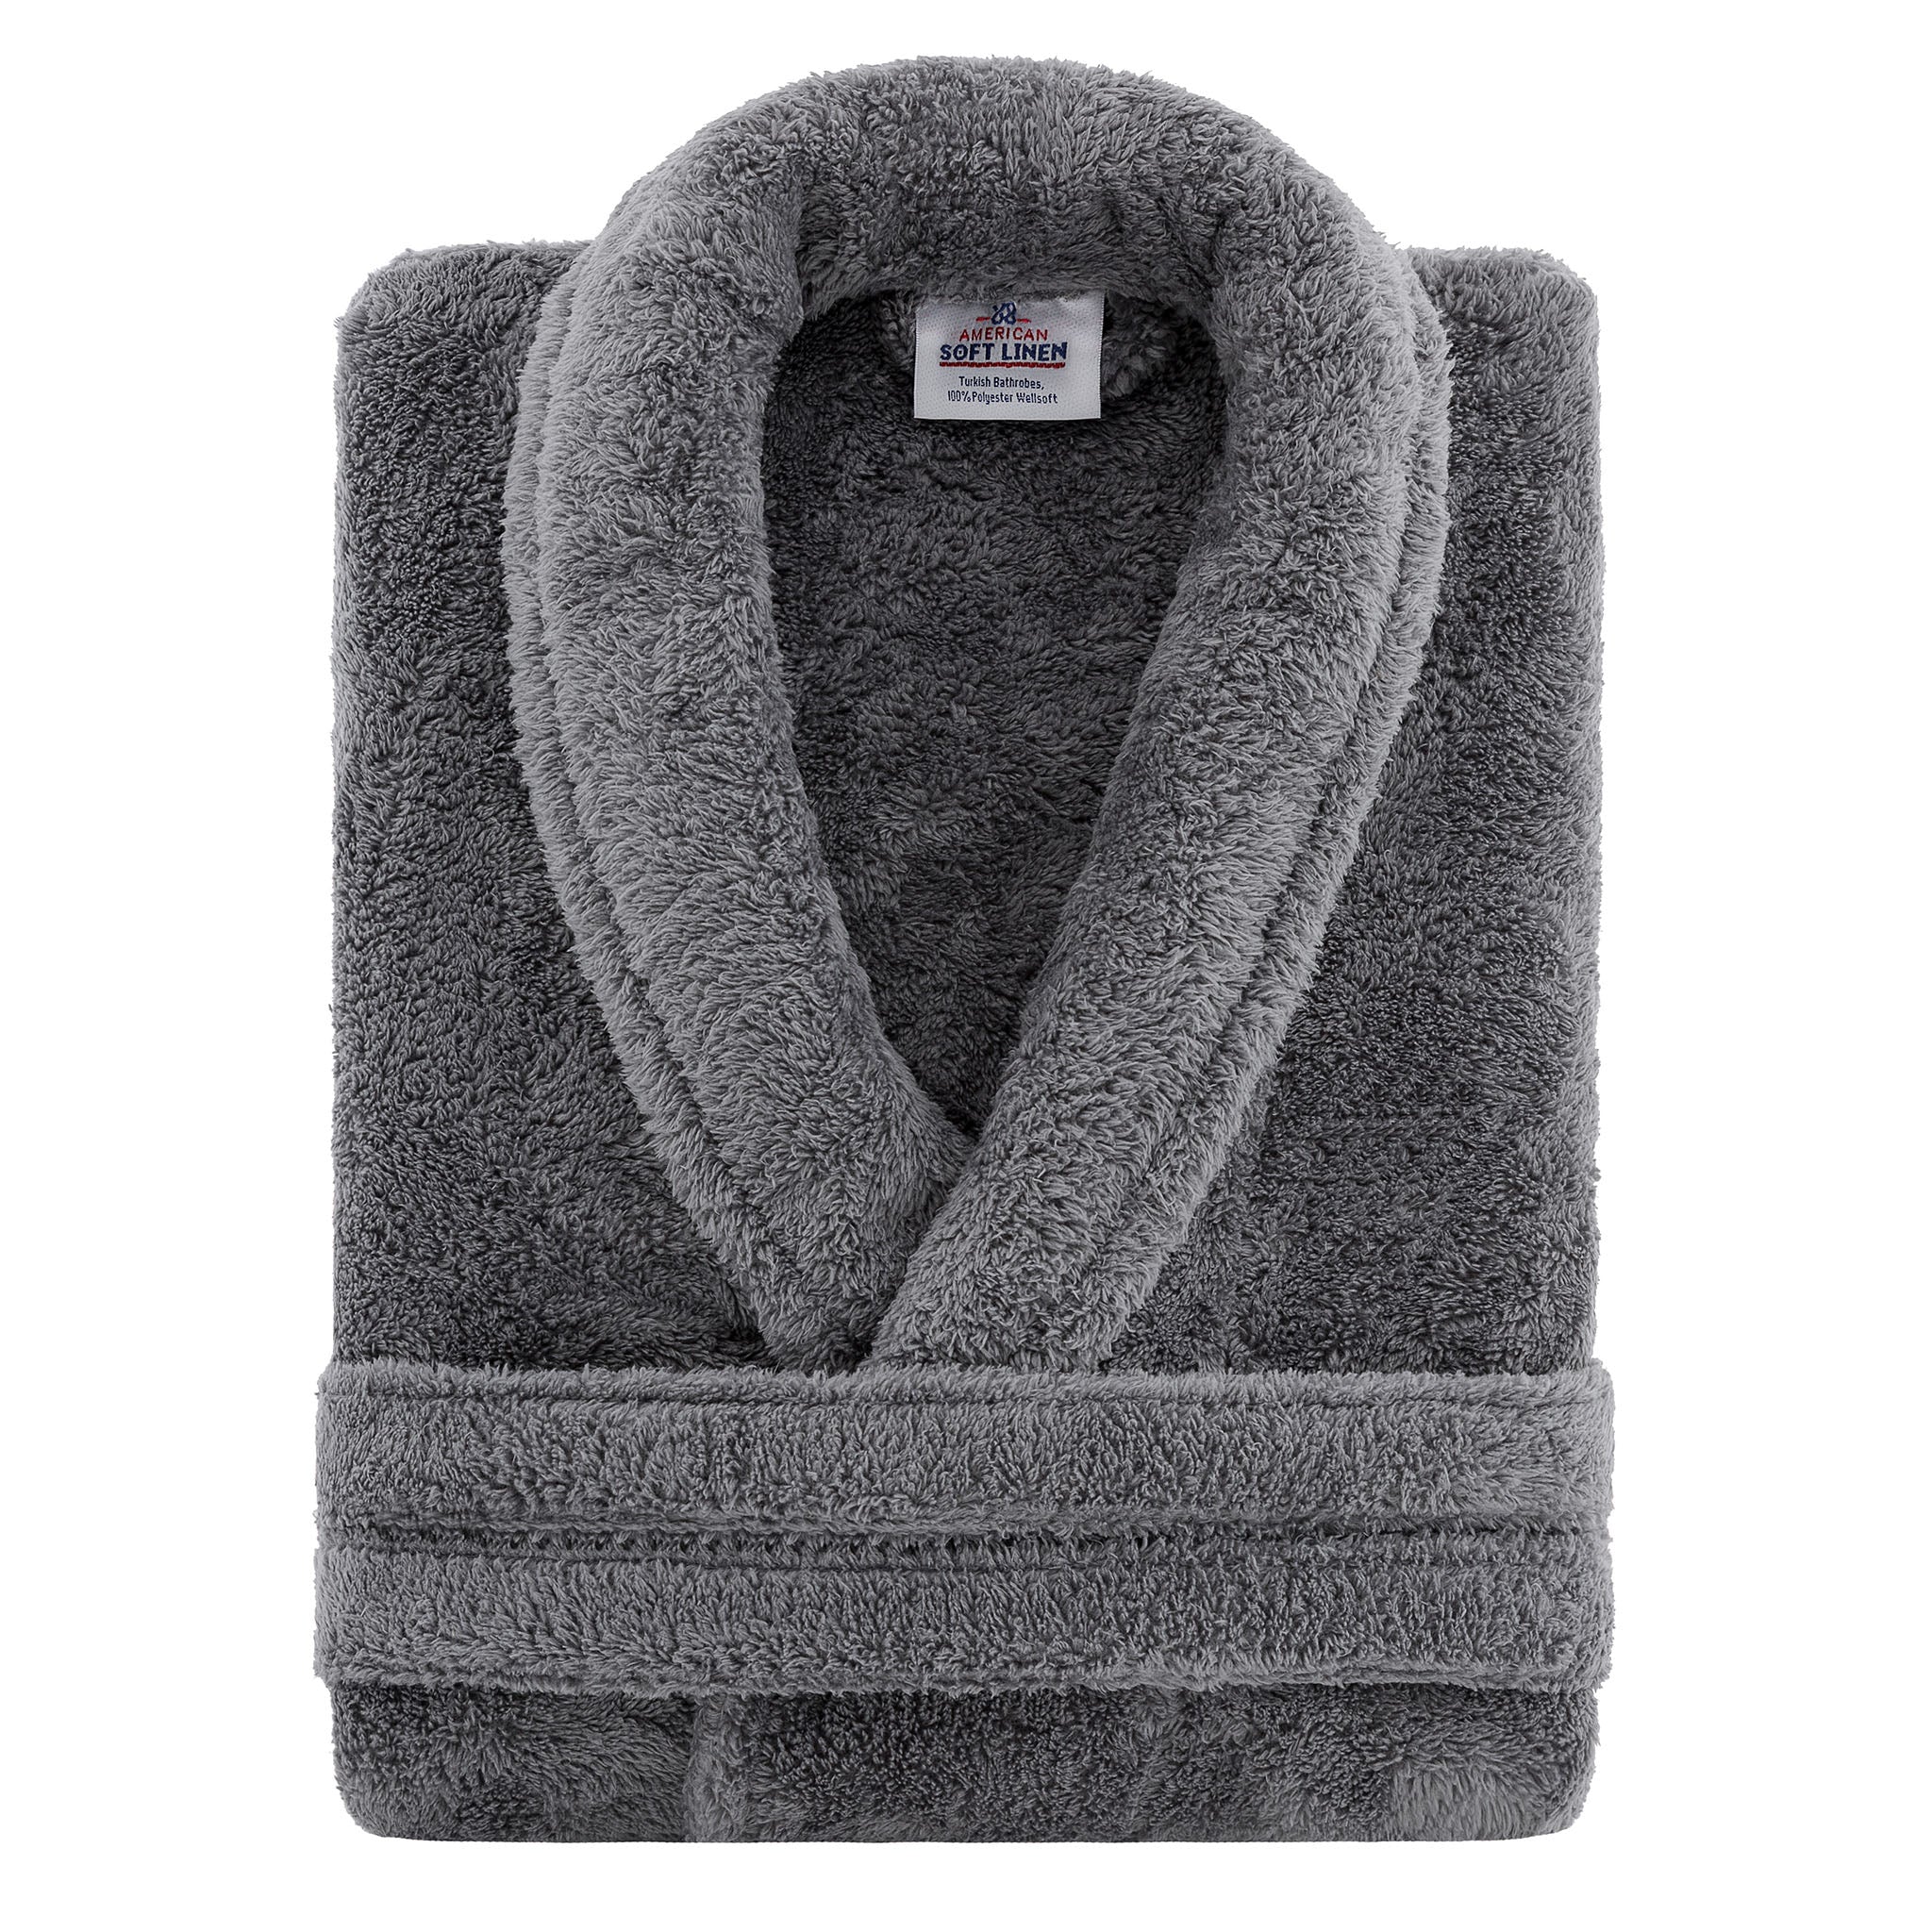 American Soft Linen Super Soft Absorbent and Fluffy Unisex Fleece Bathrobe -12 Set Case Pack -XL-XXL-gray-3